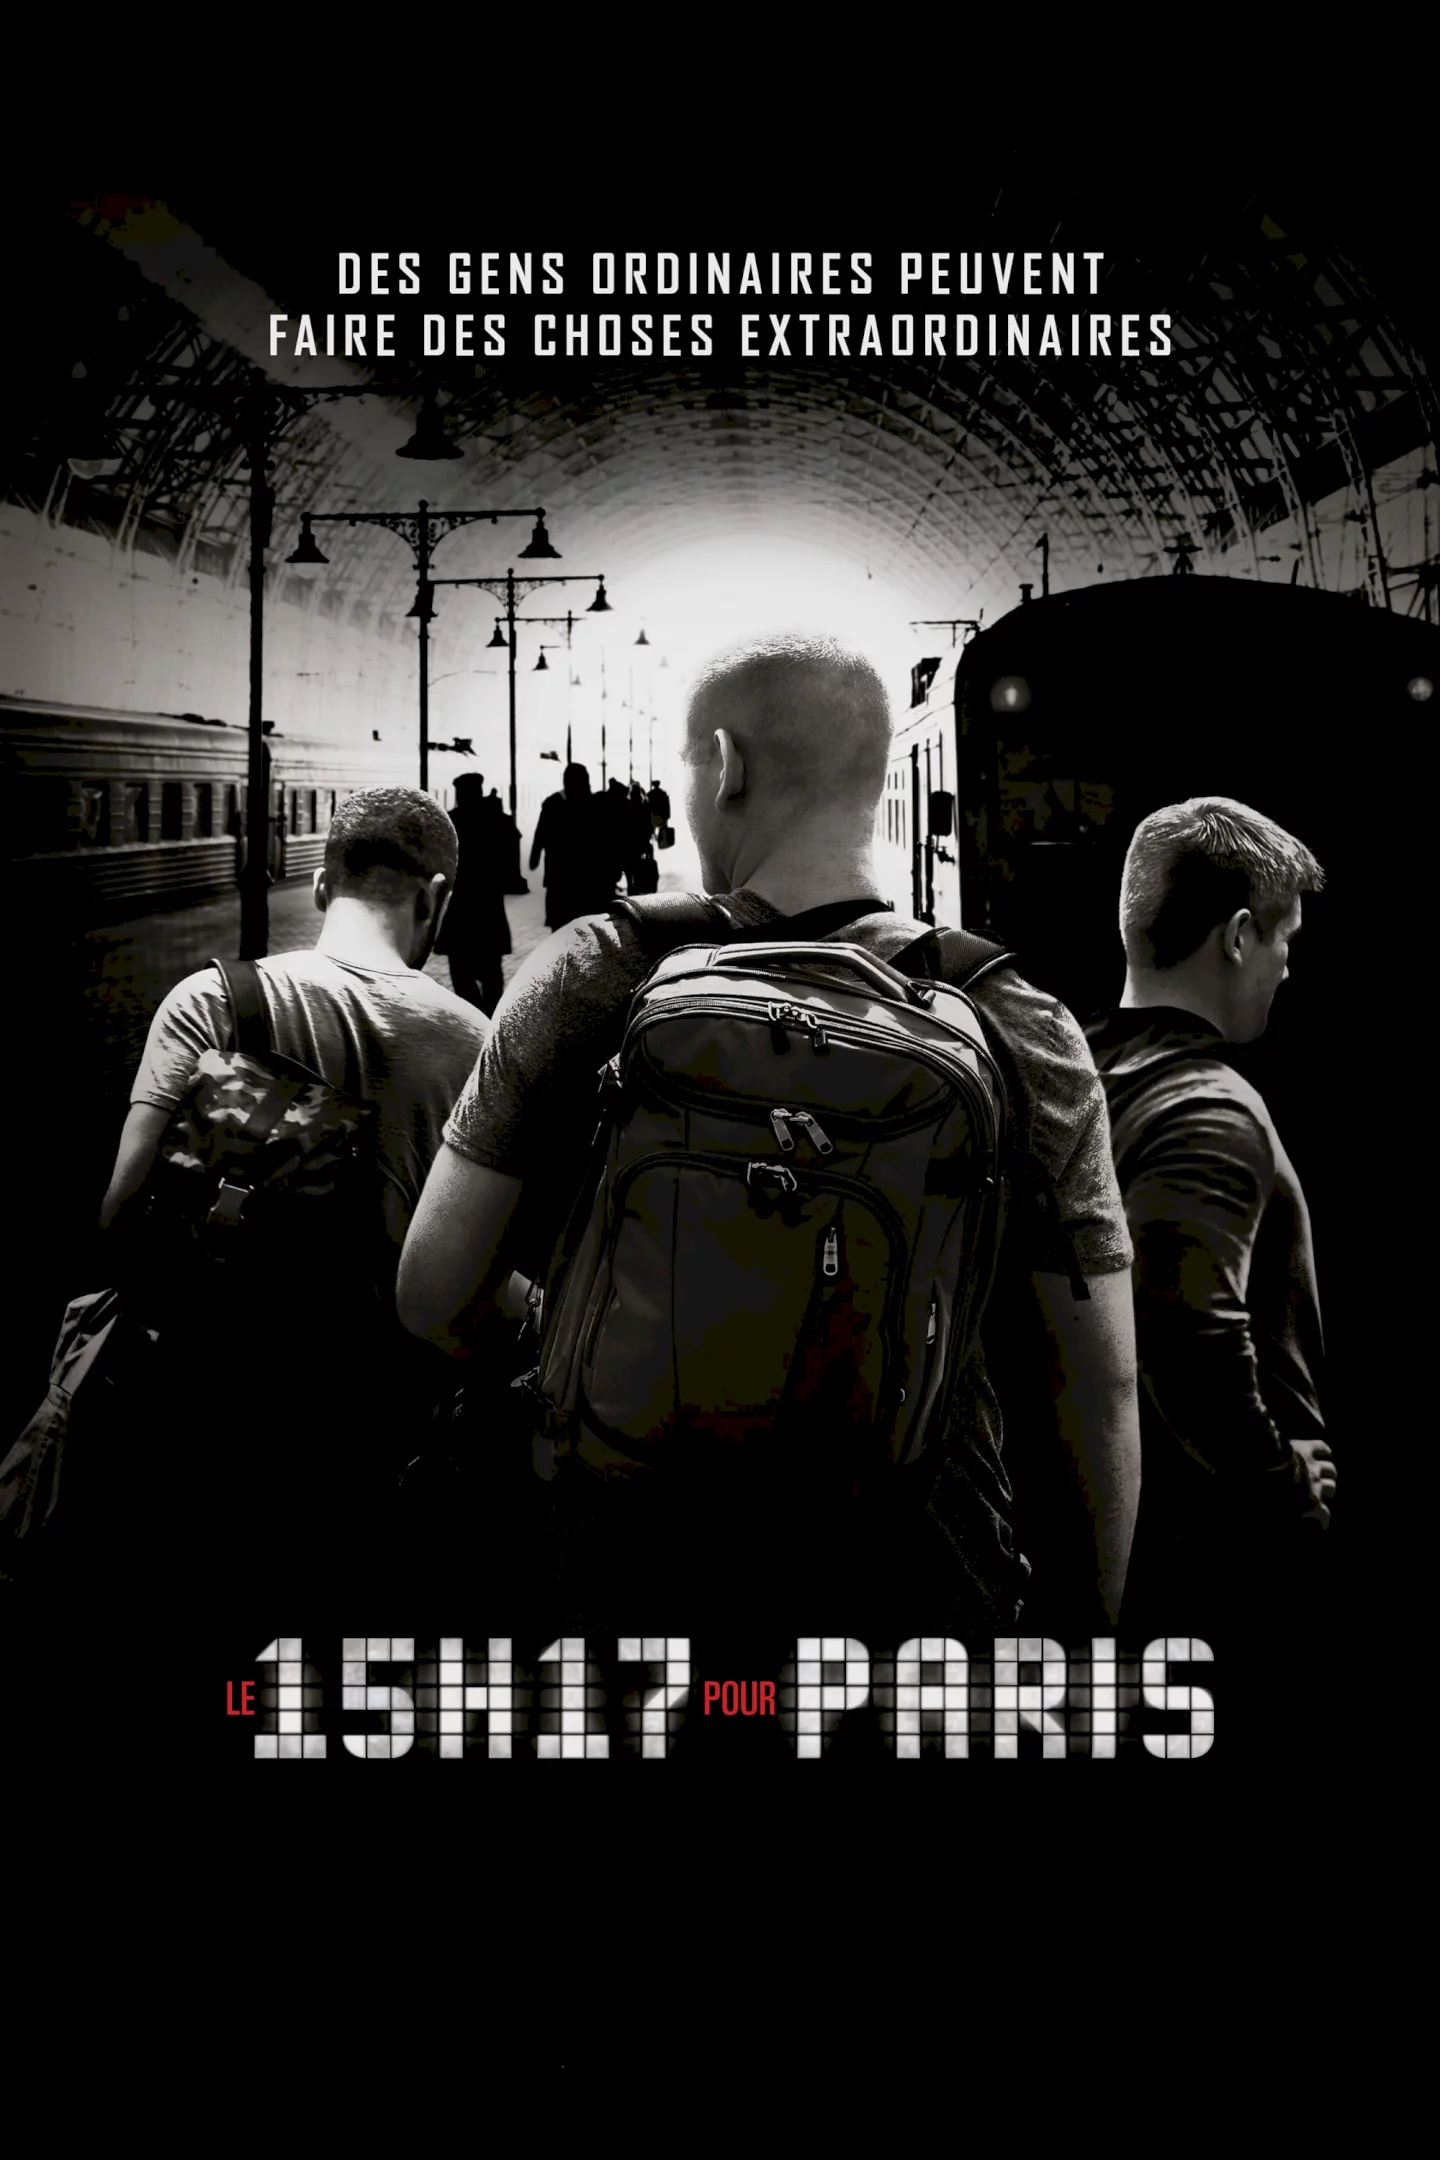 Photo du film : Le 15H17 pour Paris